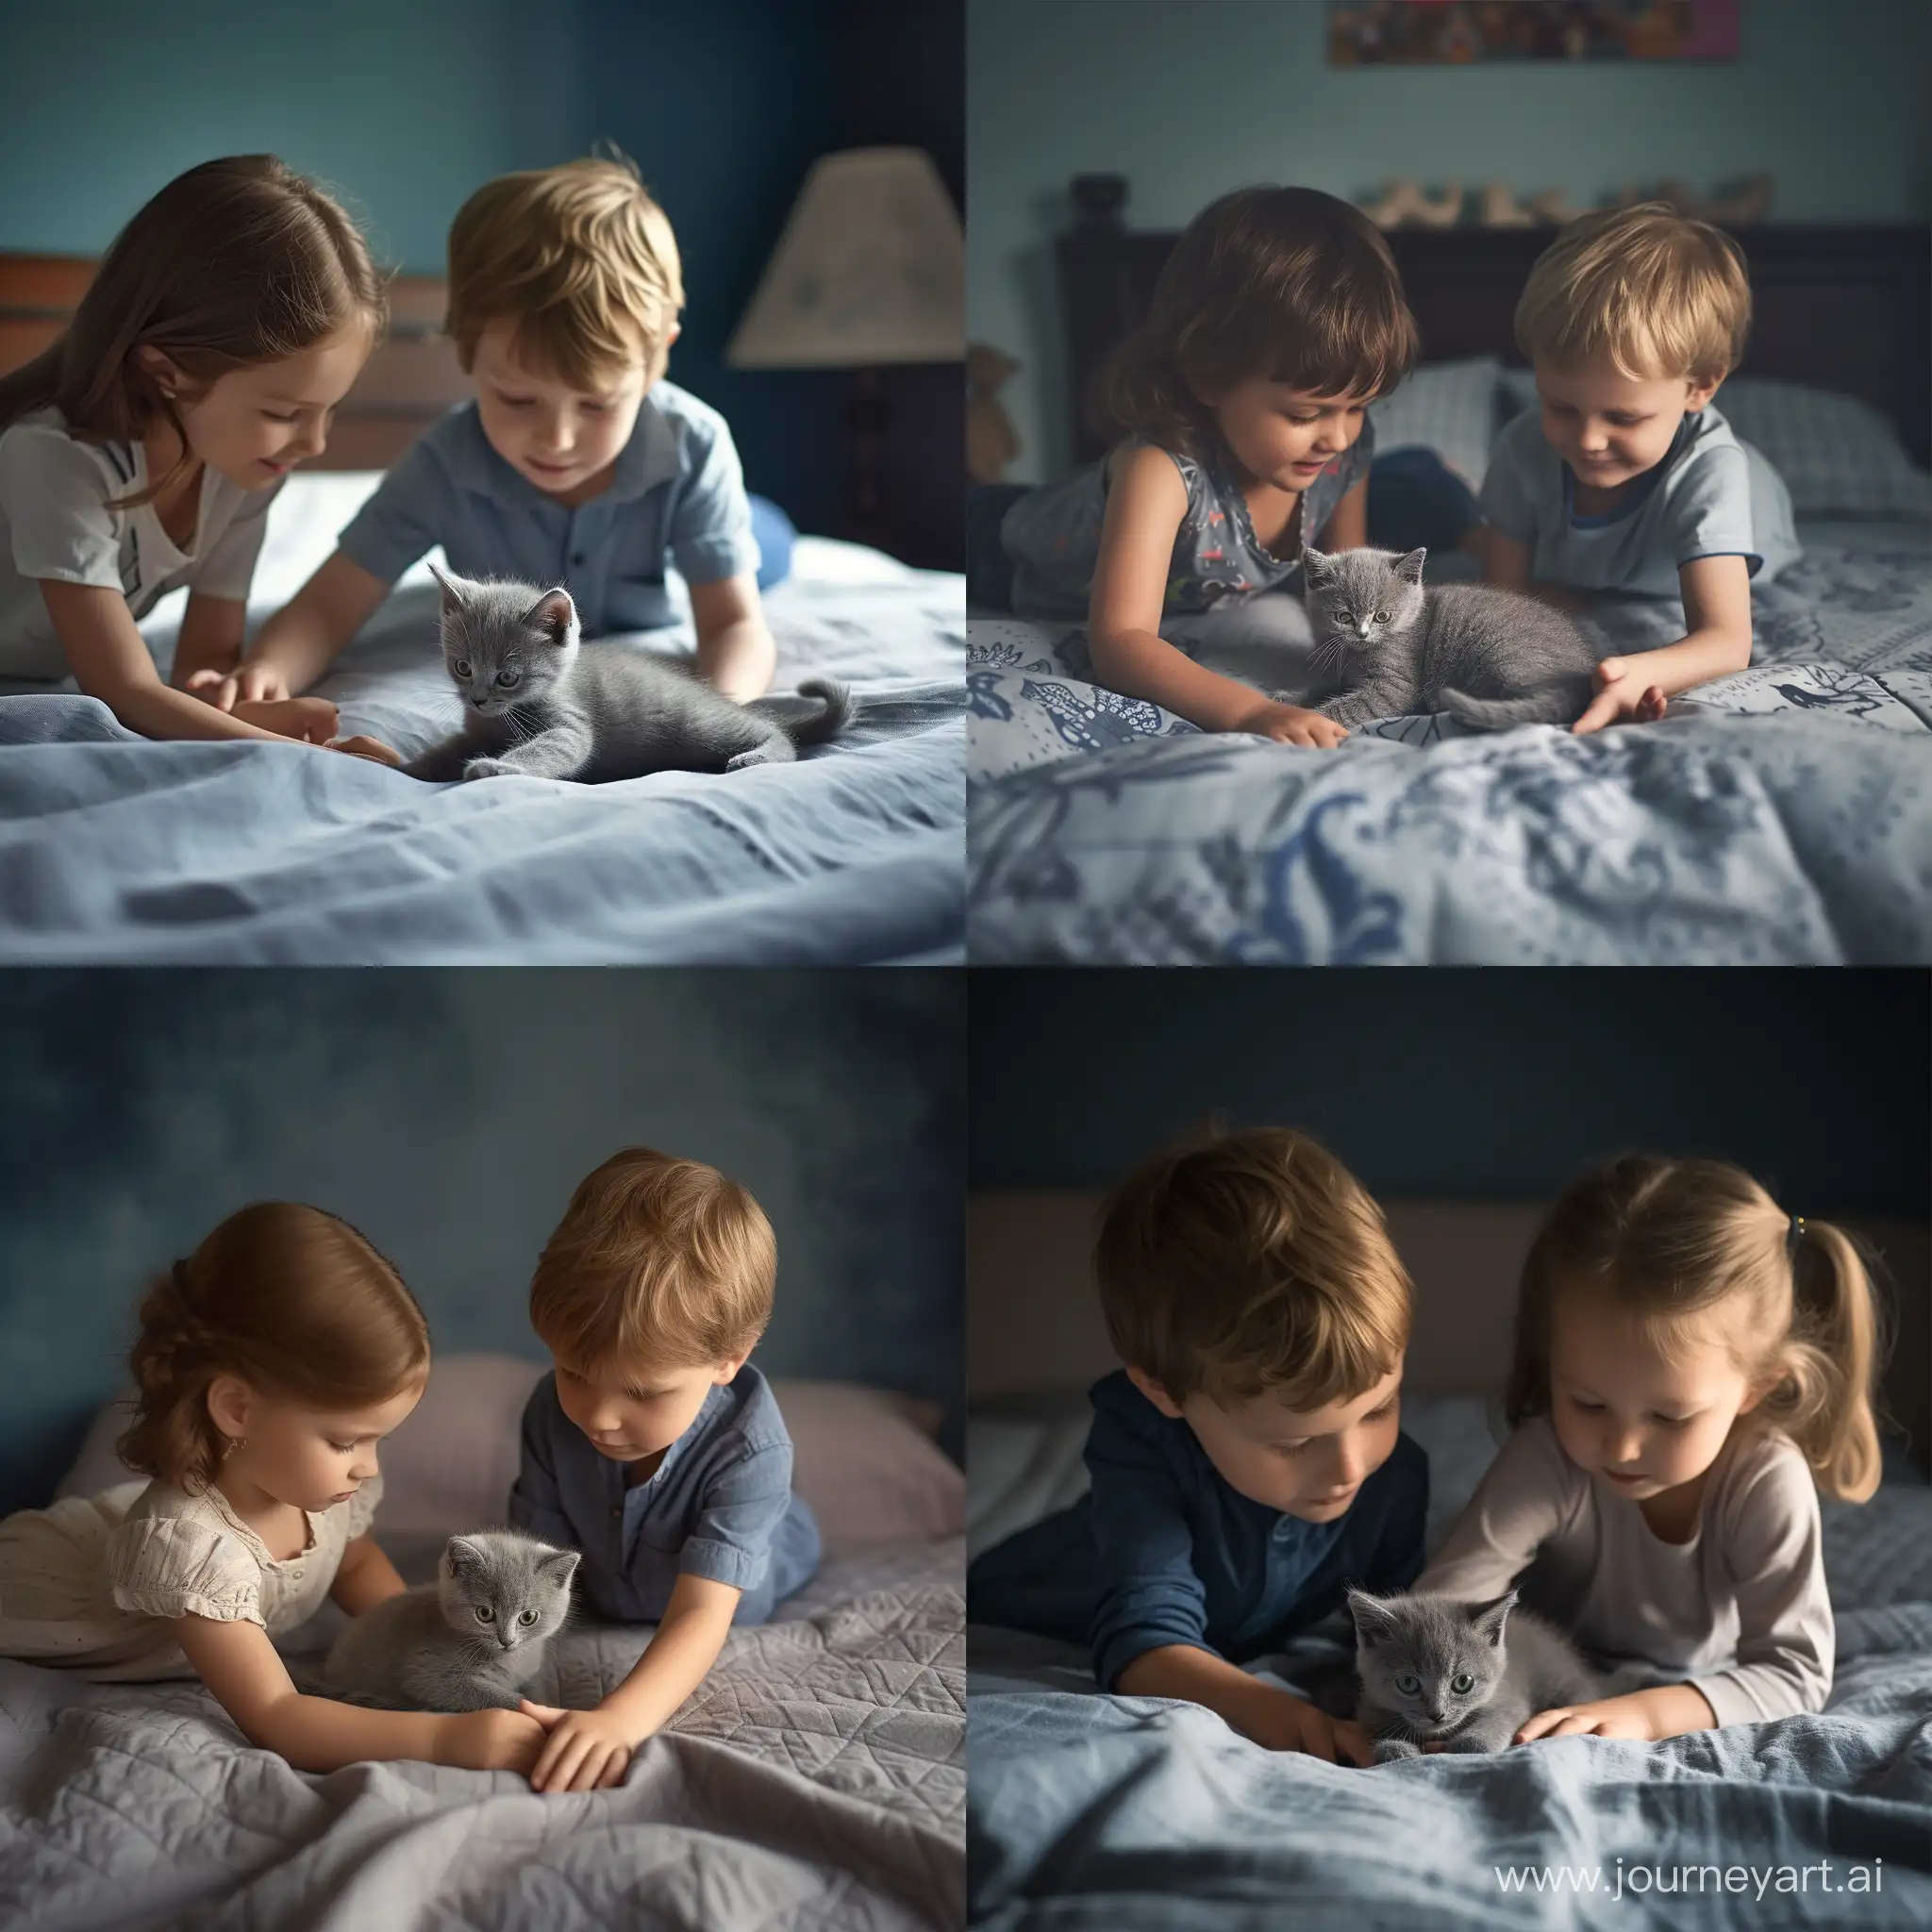 Мальчик и девочка играют с серым котёнком на кровати в комнате, фотография, гиперреализм, высокое разрешение